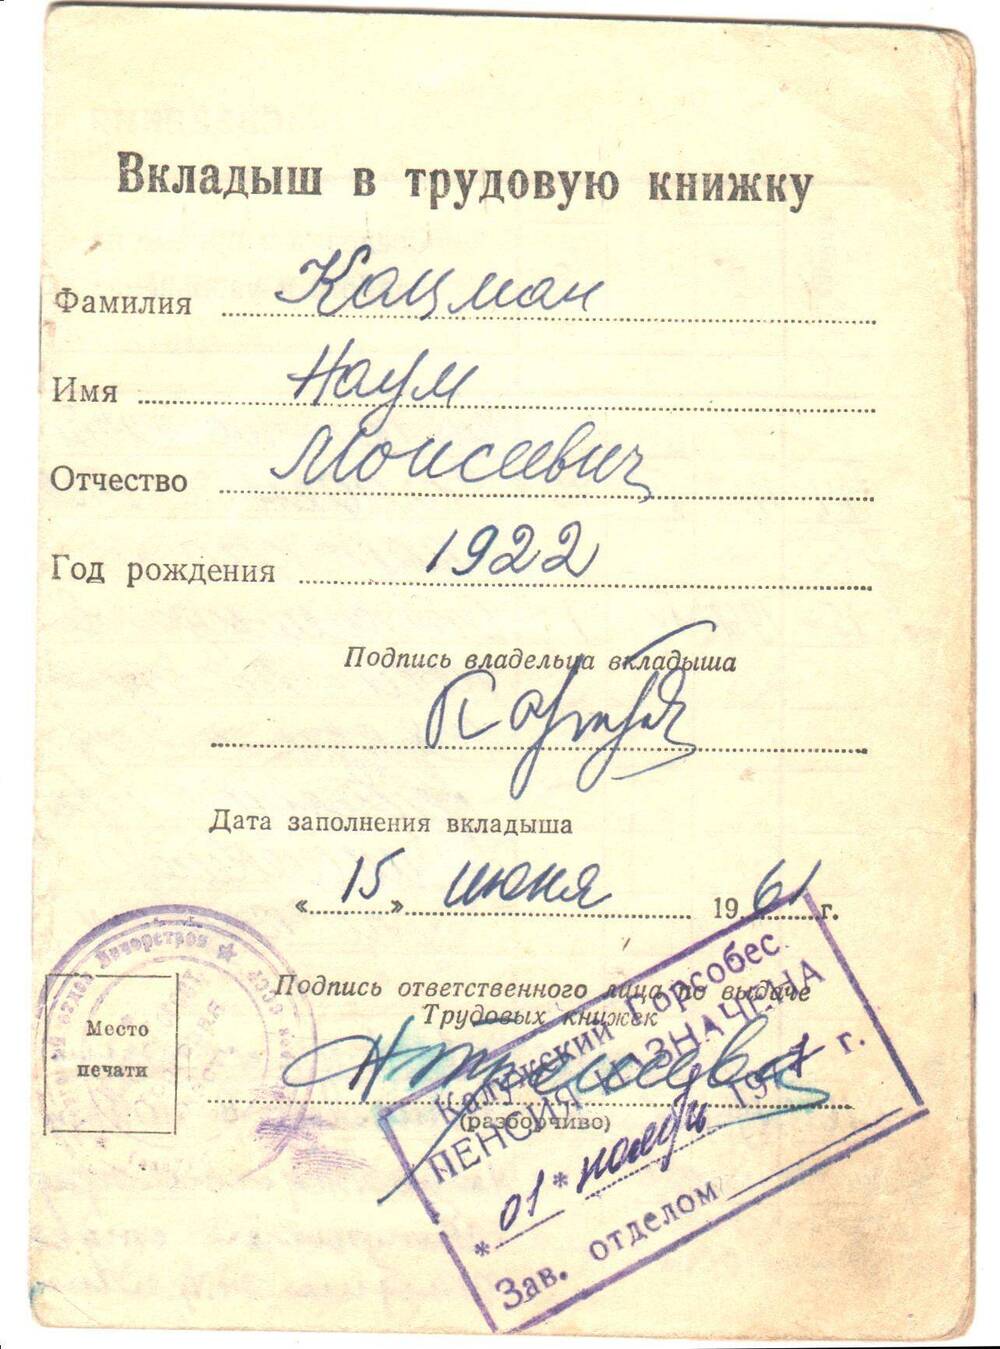 Вкладыш  в трудовую книжку Кацман Наум Моисеевич- д.р. 1922 года-  и.о.начальника Строительно-монтажного поезда №257 Печорстроя.